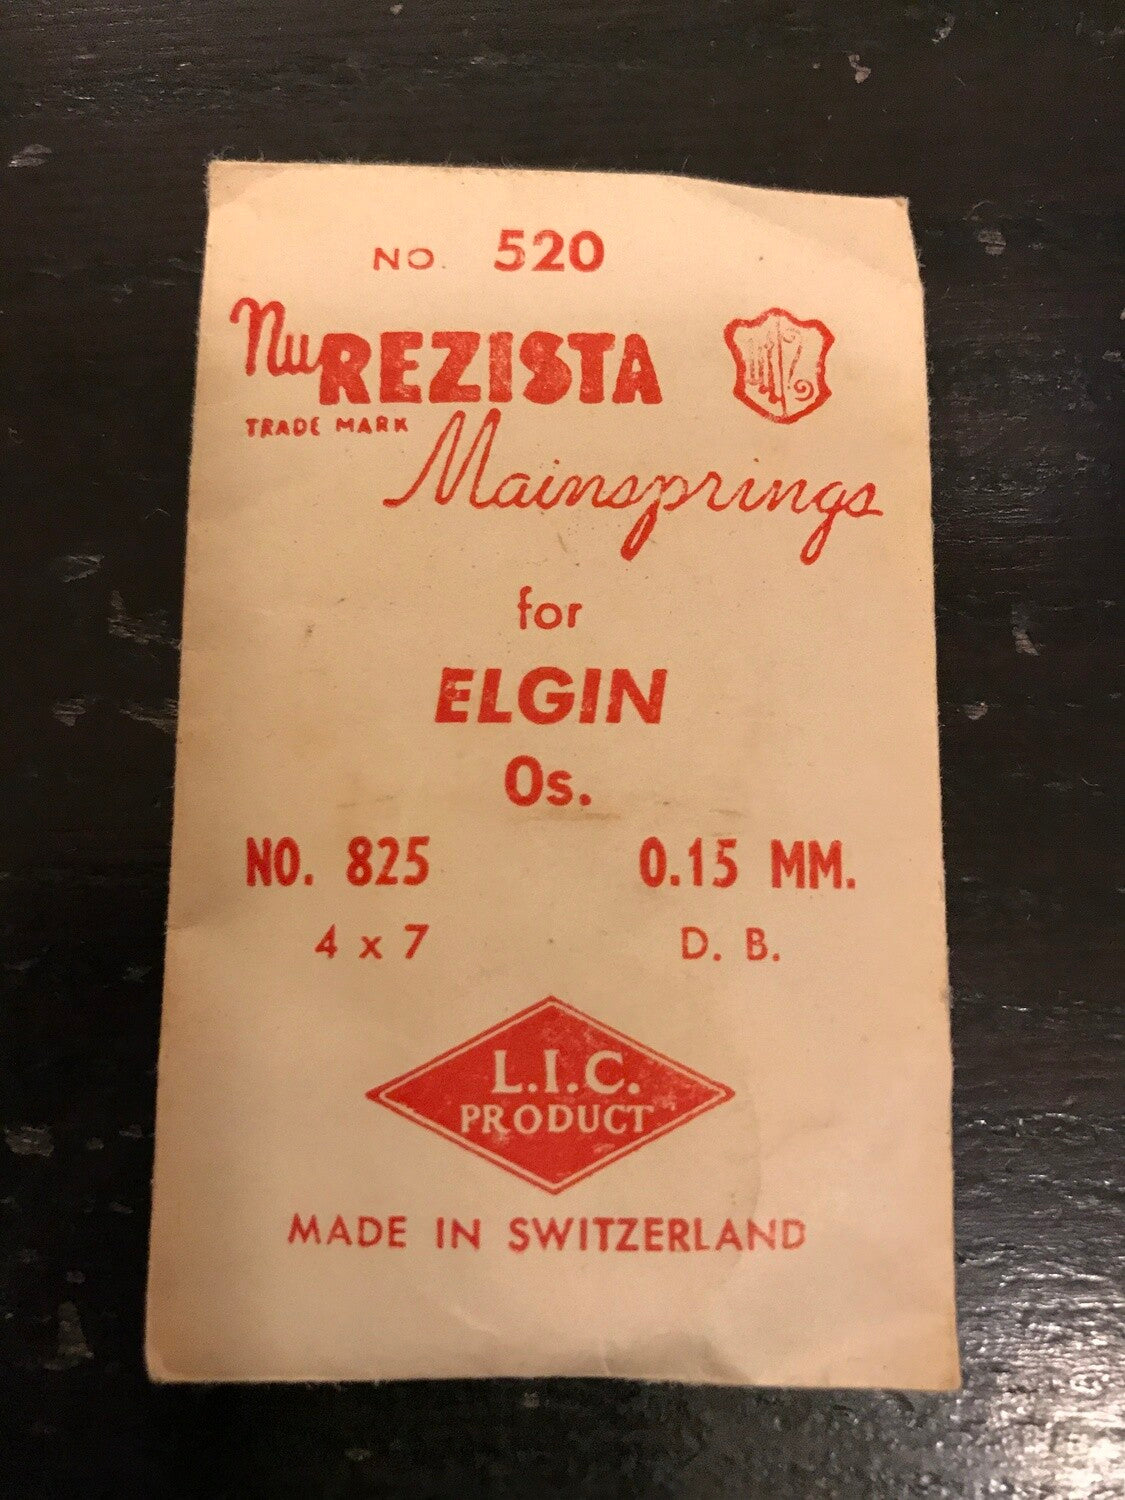 NuRezista Mainspring #520 for Elgin 0s No. Factory No. 825 - Steel